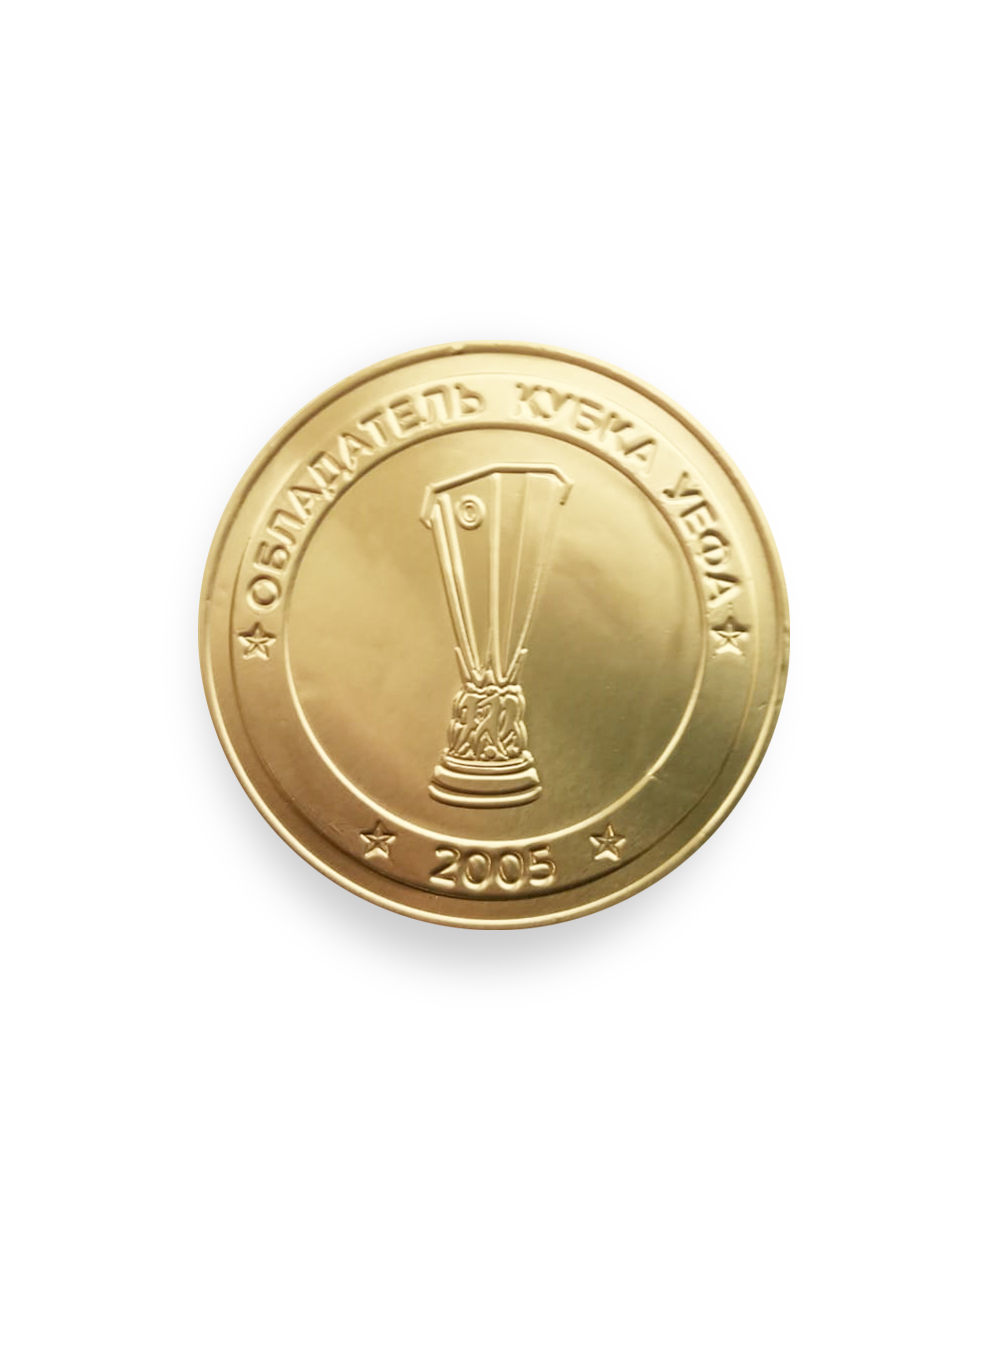 Медаль шоколадная ПФК ЦСКА - Обладатель Кубка УЕФА 2005 (25 г.)